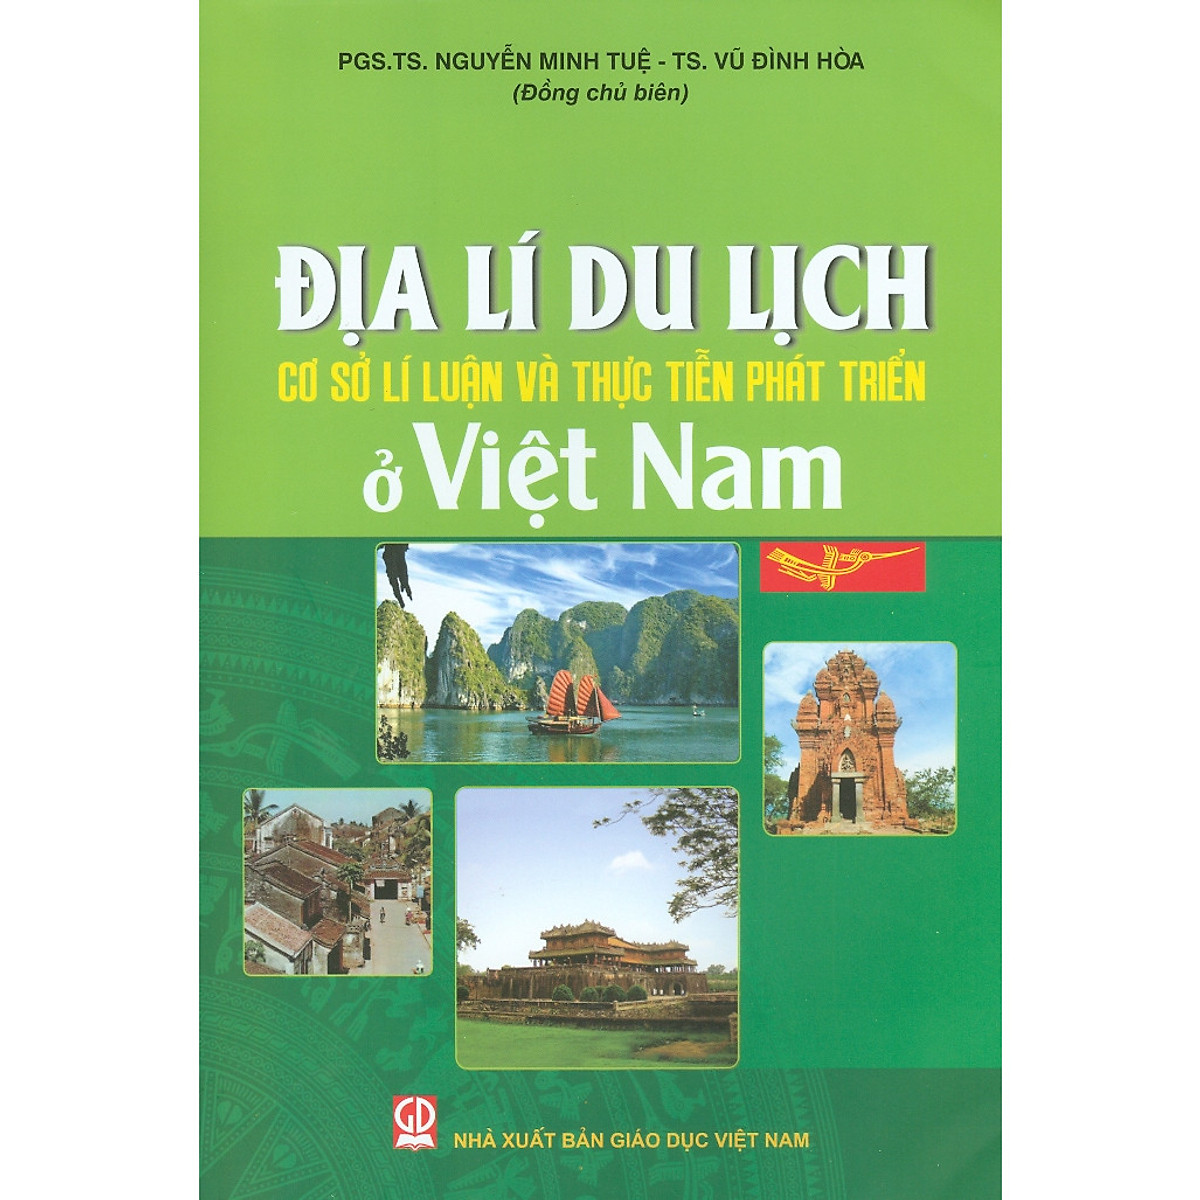  Địa Lý Du Lịch Việt Nam - Cơ Sở Lí Luận Và Thực Tiễn Phát Triển Ở Việt Nam